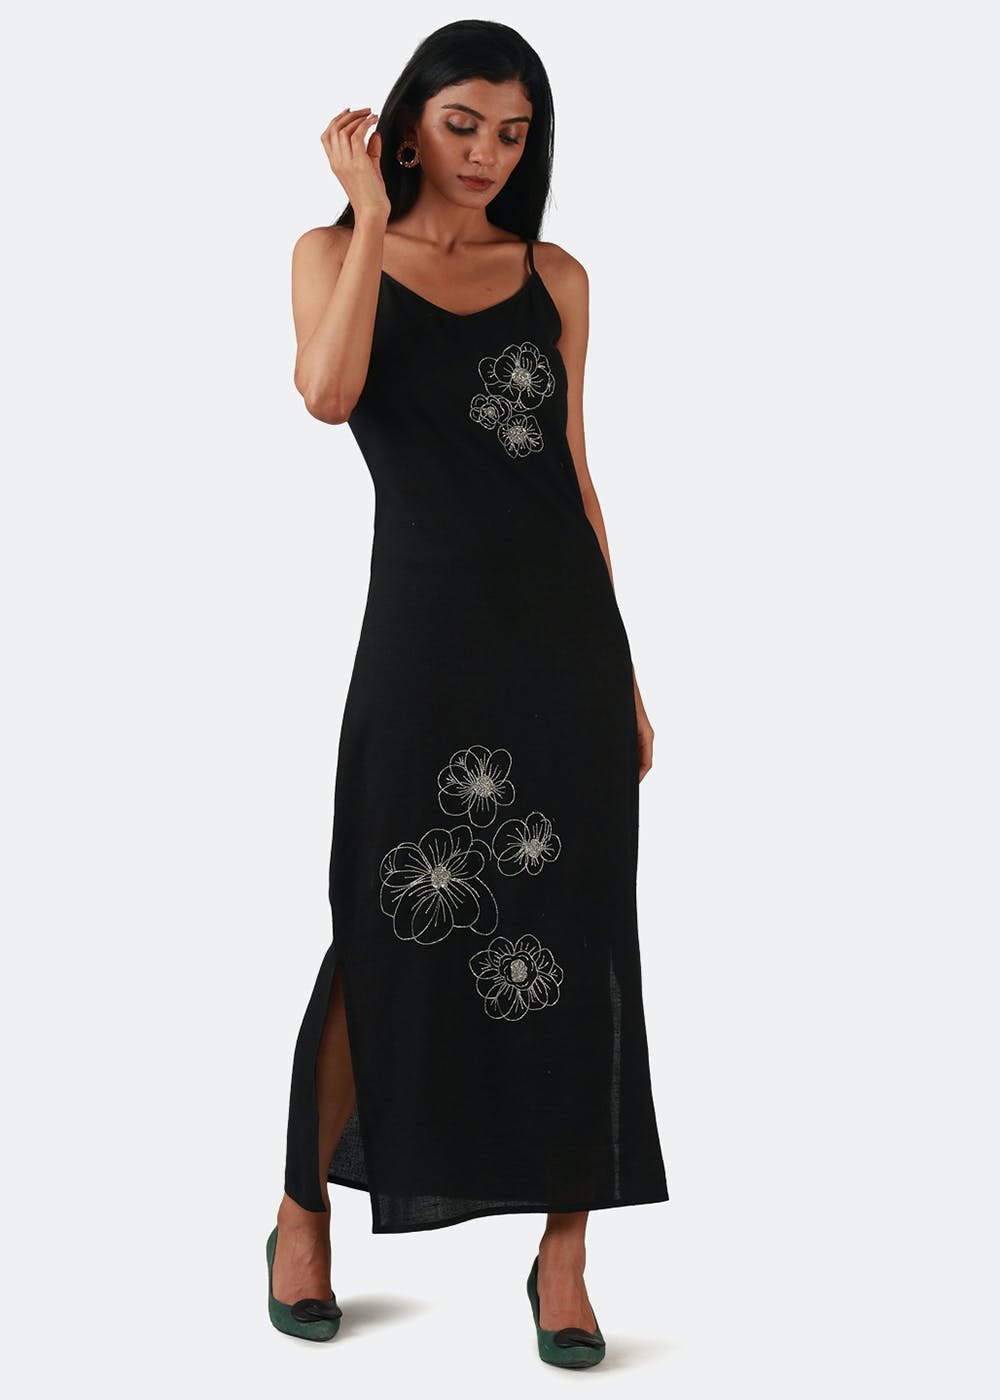 Scattered Big Floral Detail Black Strappy Dress